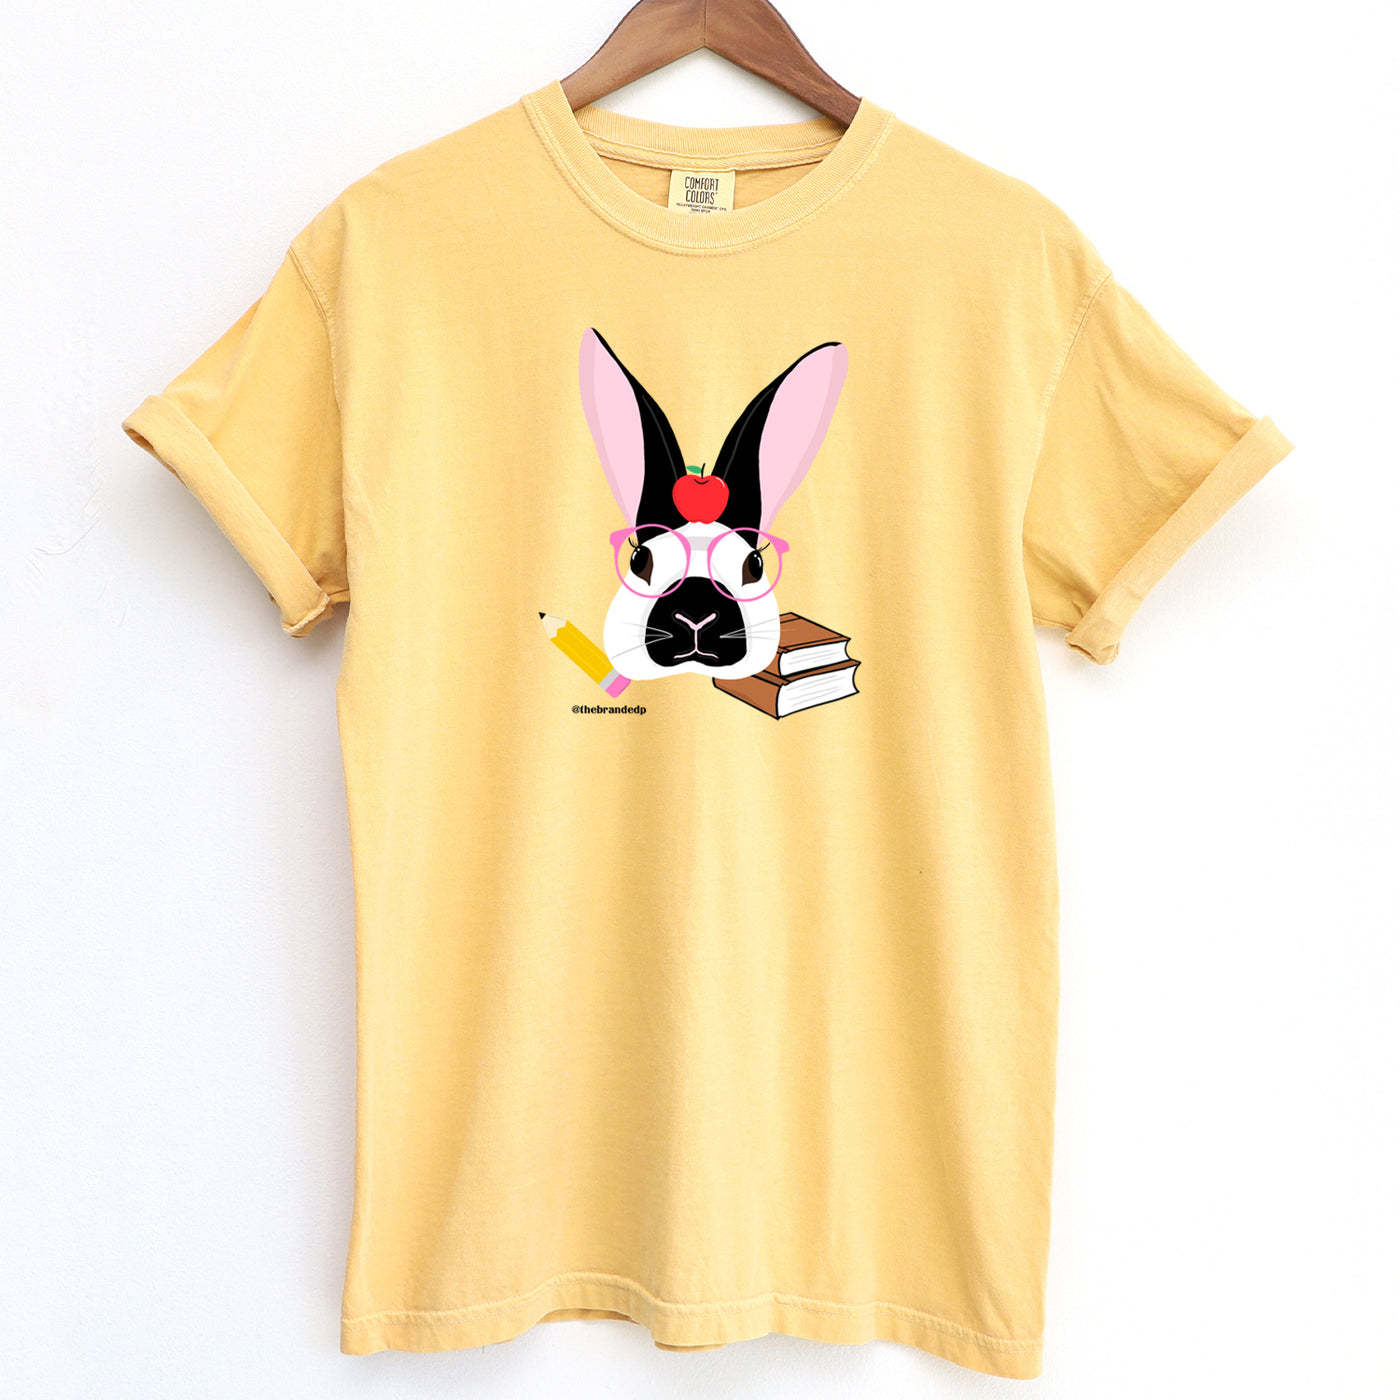 Smart Rabbit ComfortWash/ComfortColor T-Shirt (S-4XL) - Multiple Colors!